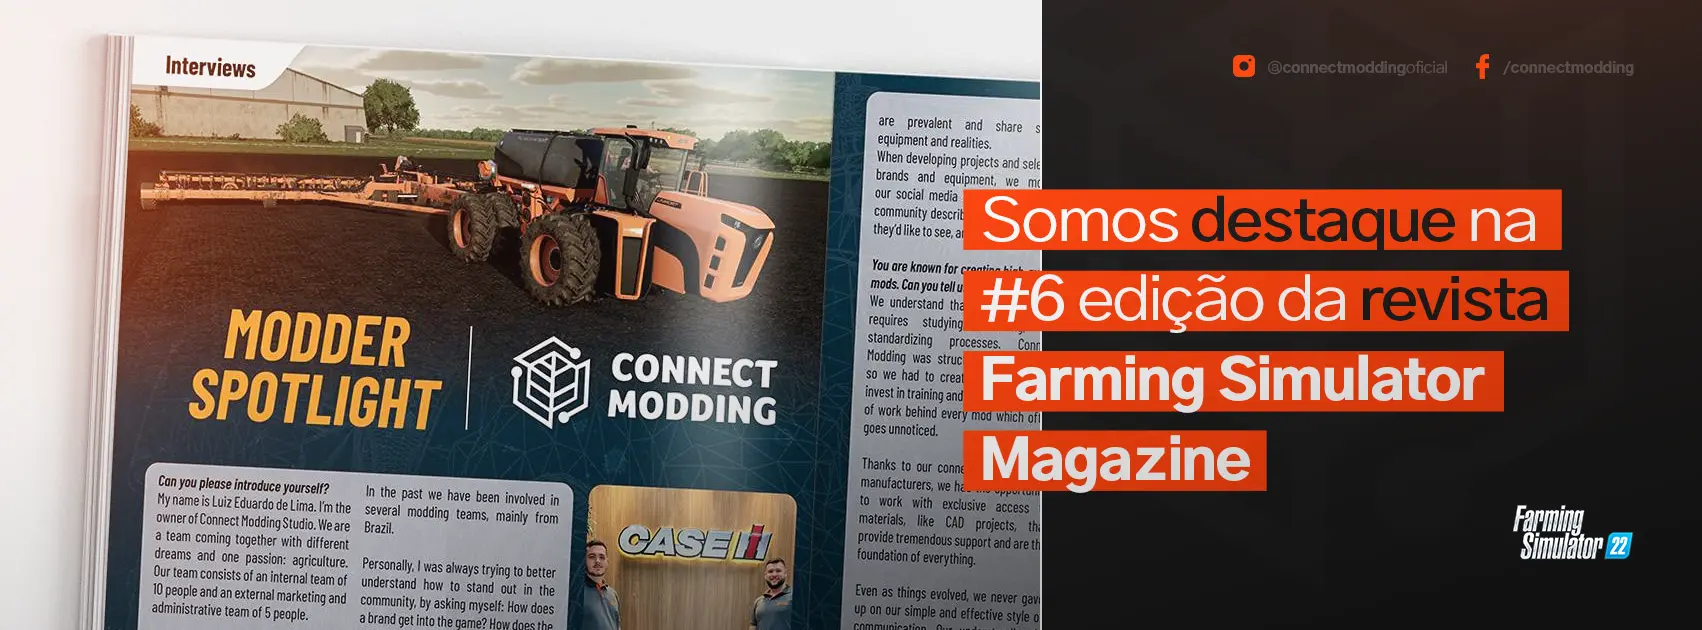 Destaque de Hoje: Connect Modding Connect Modding é destaque na #6 edição de Farming Simulator Magazine